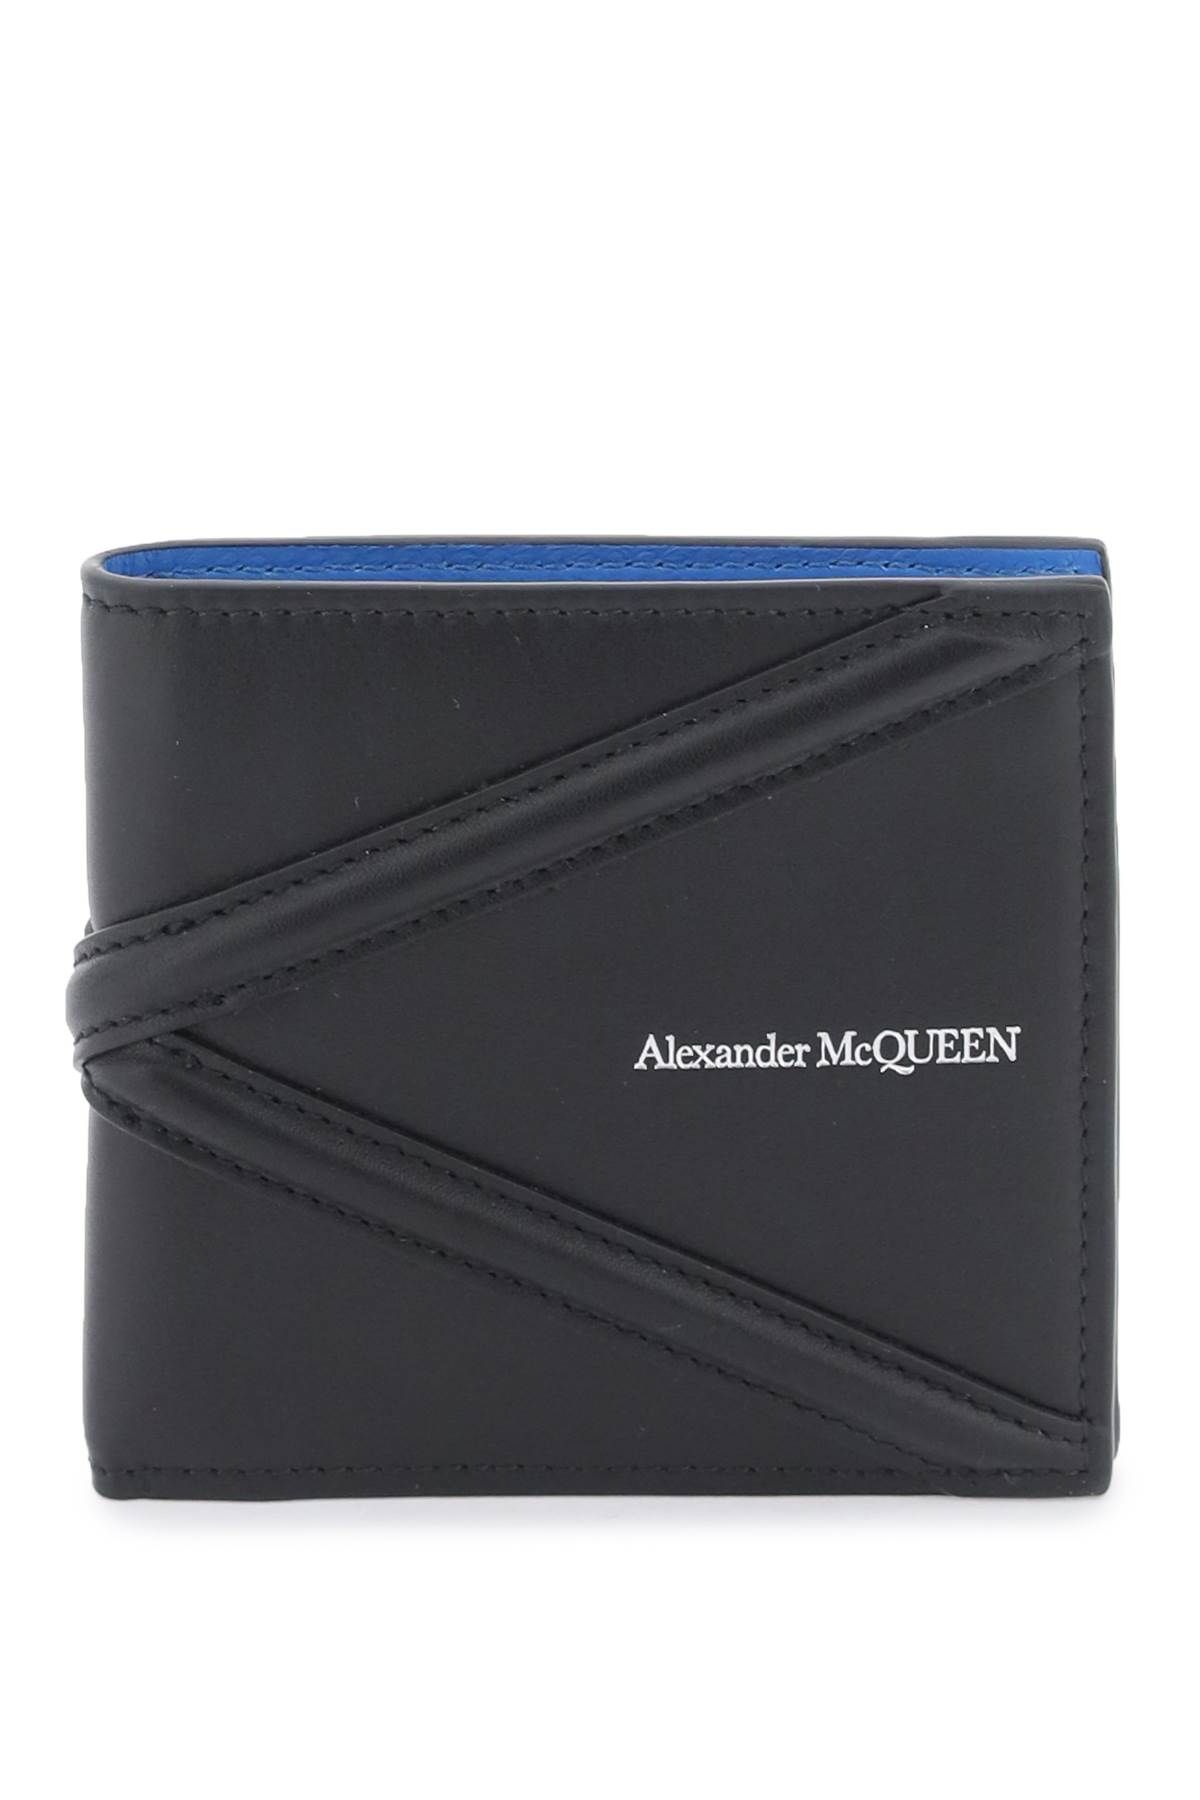 ALEXANDER MCQUEEN harness bifold wallet